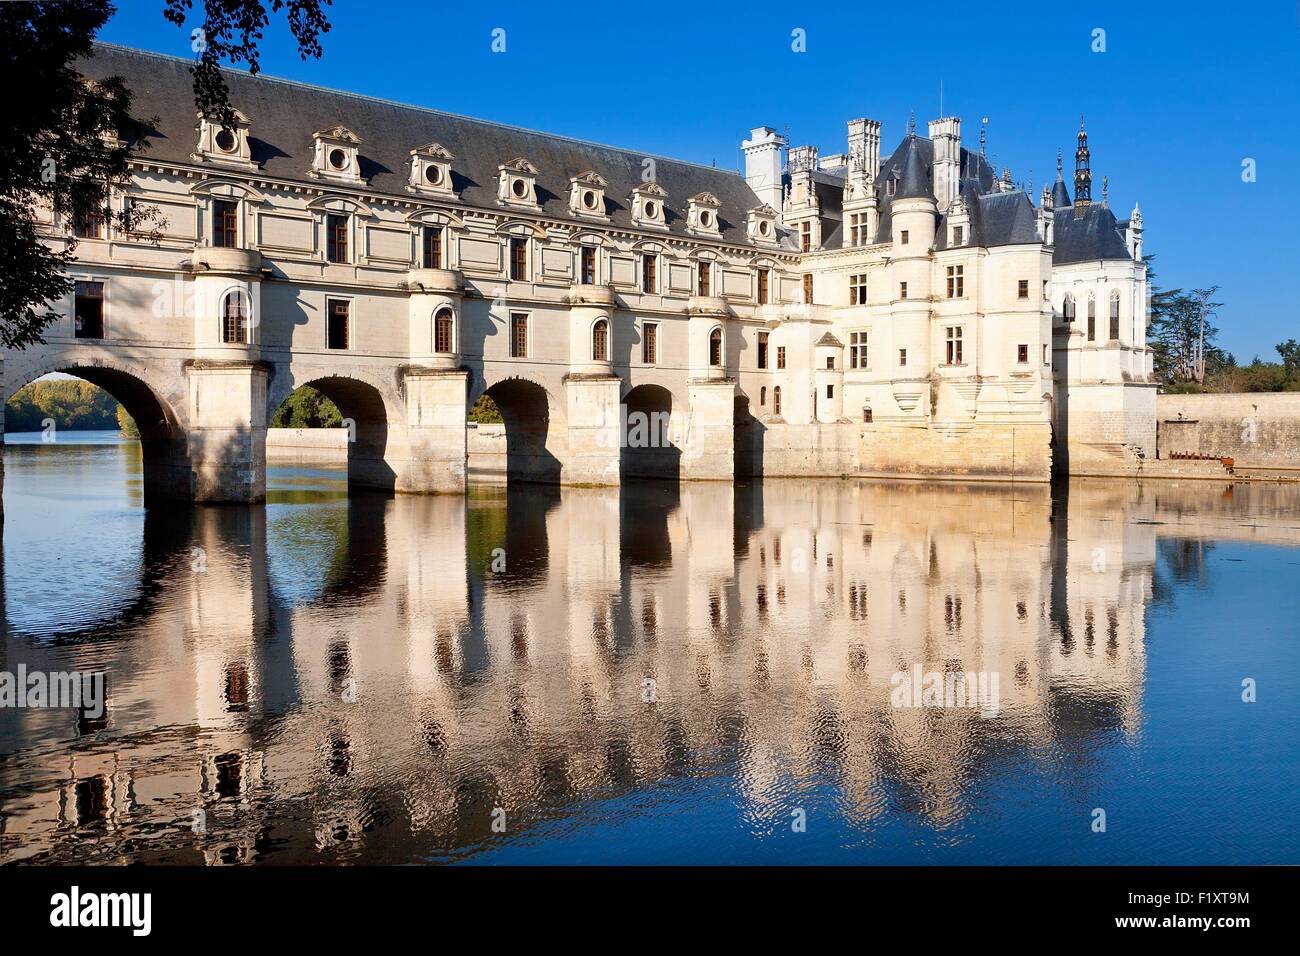 France, Indre et Loire, Chenonceau Castle Stock Photo